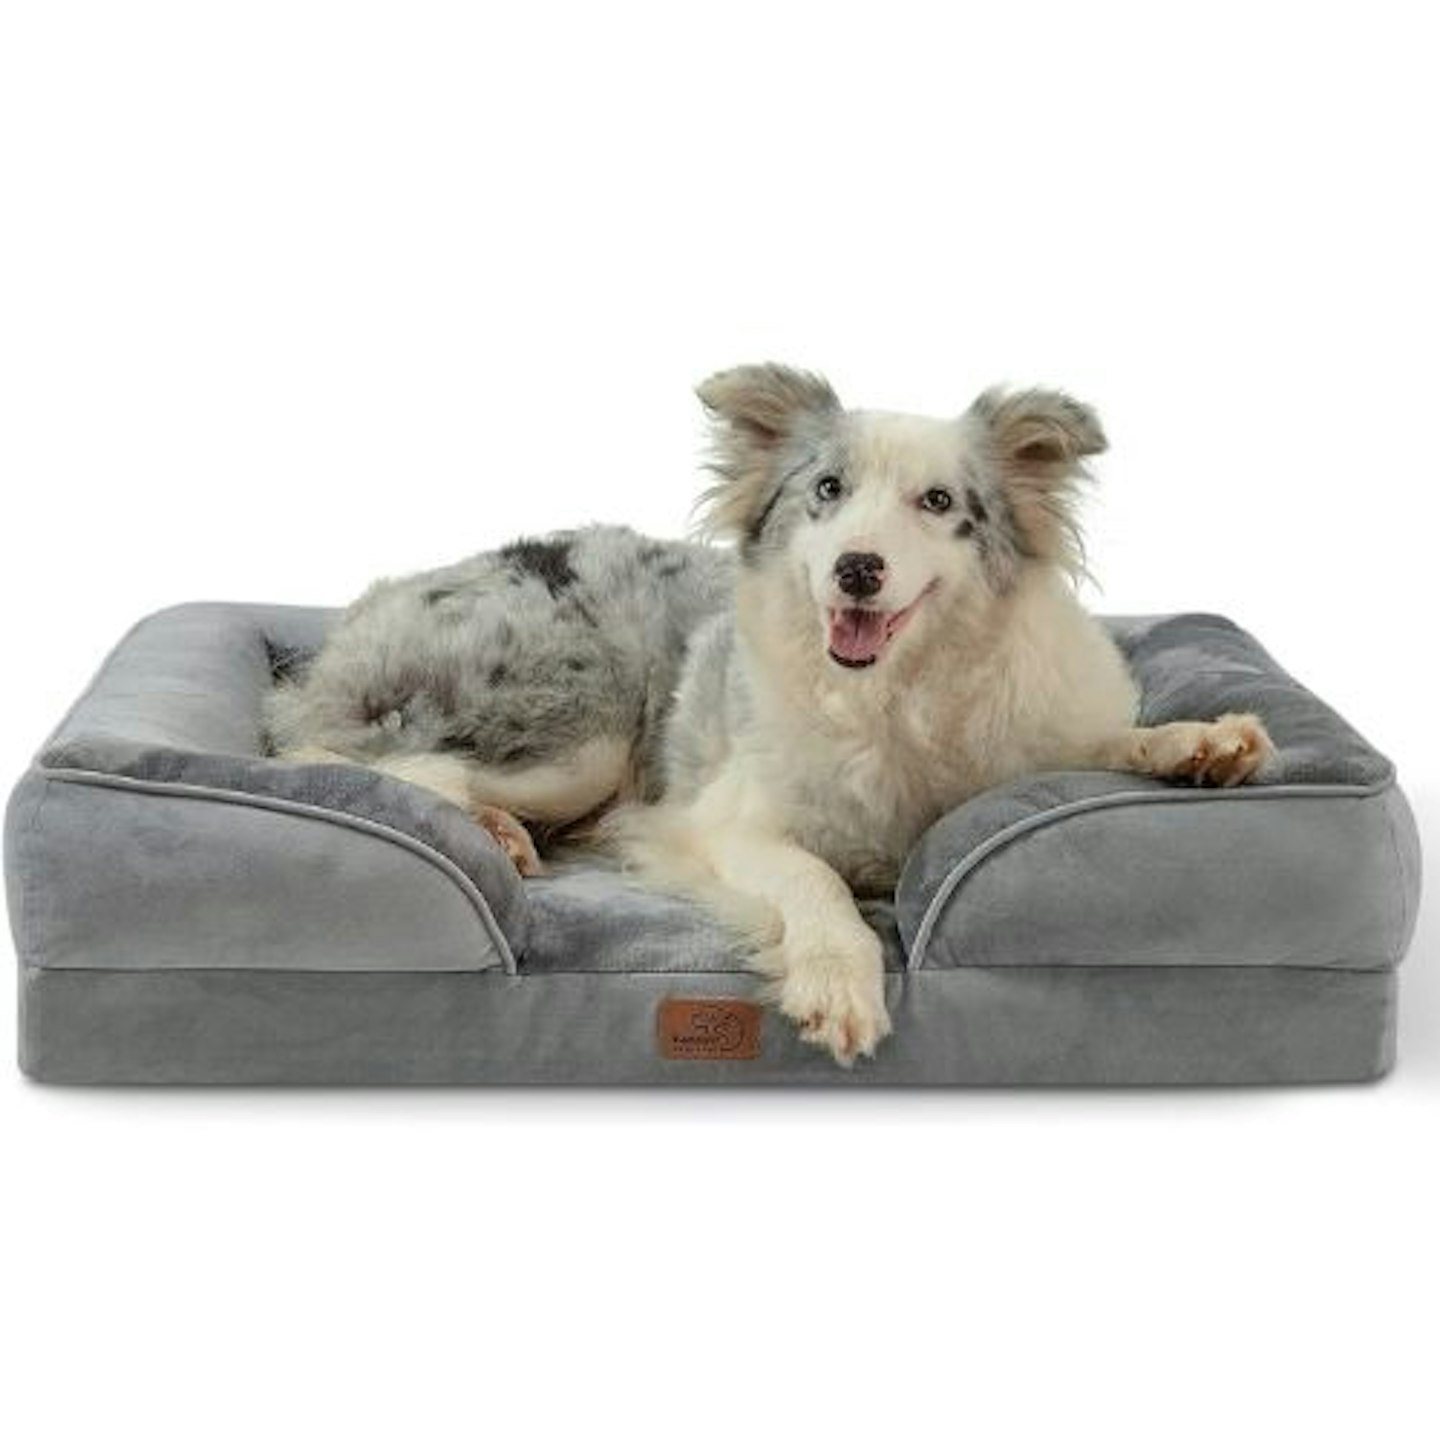 Bedsure Large Dog Bed Sofa